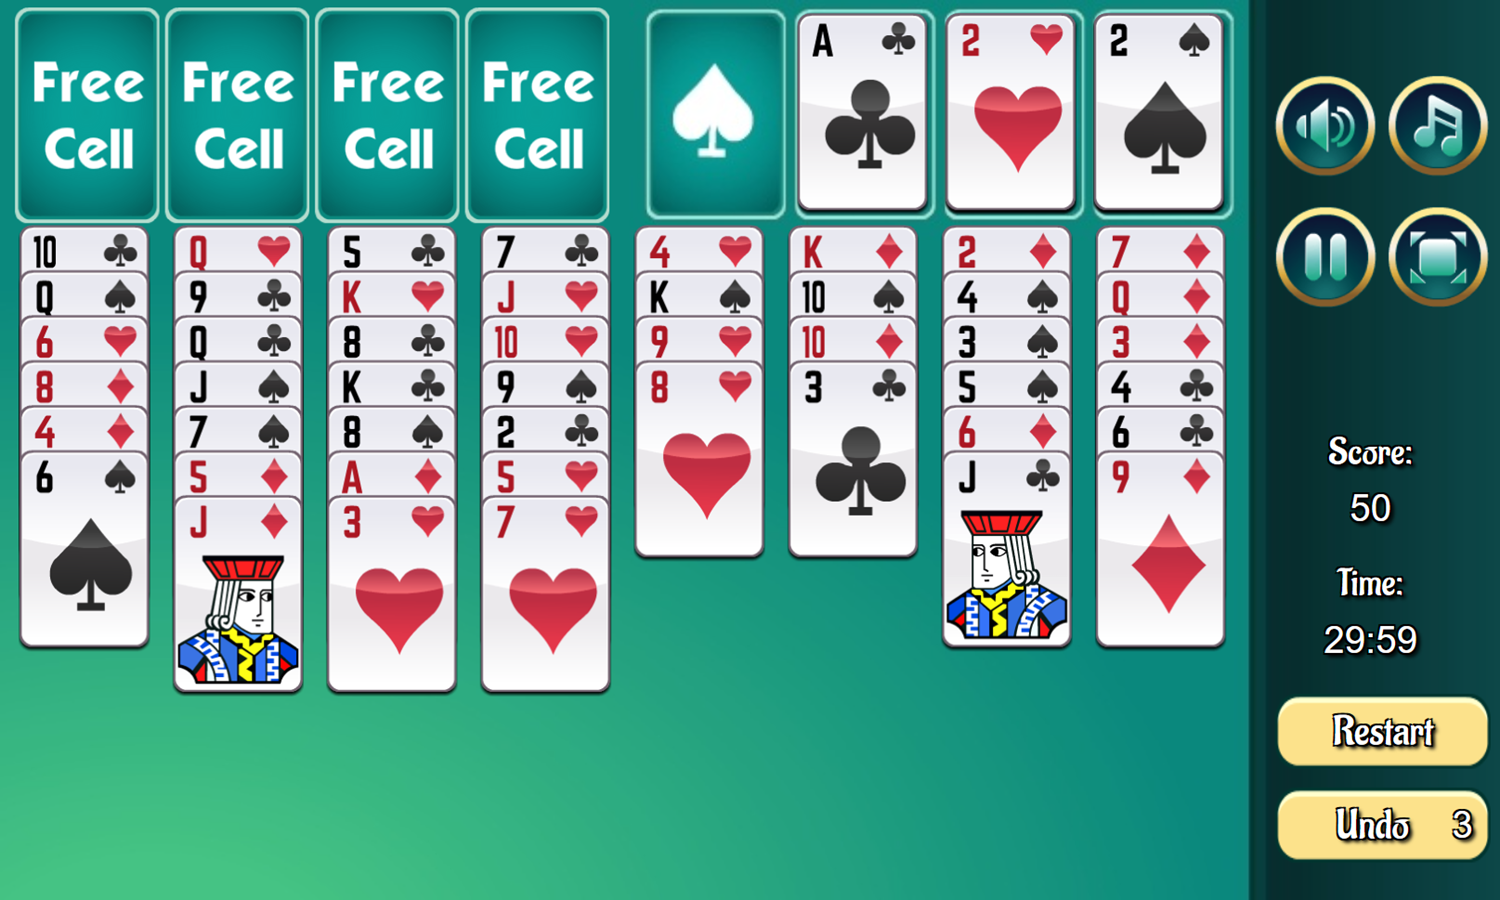 Free Cell Game Start Screenshot.